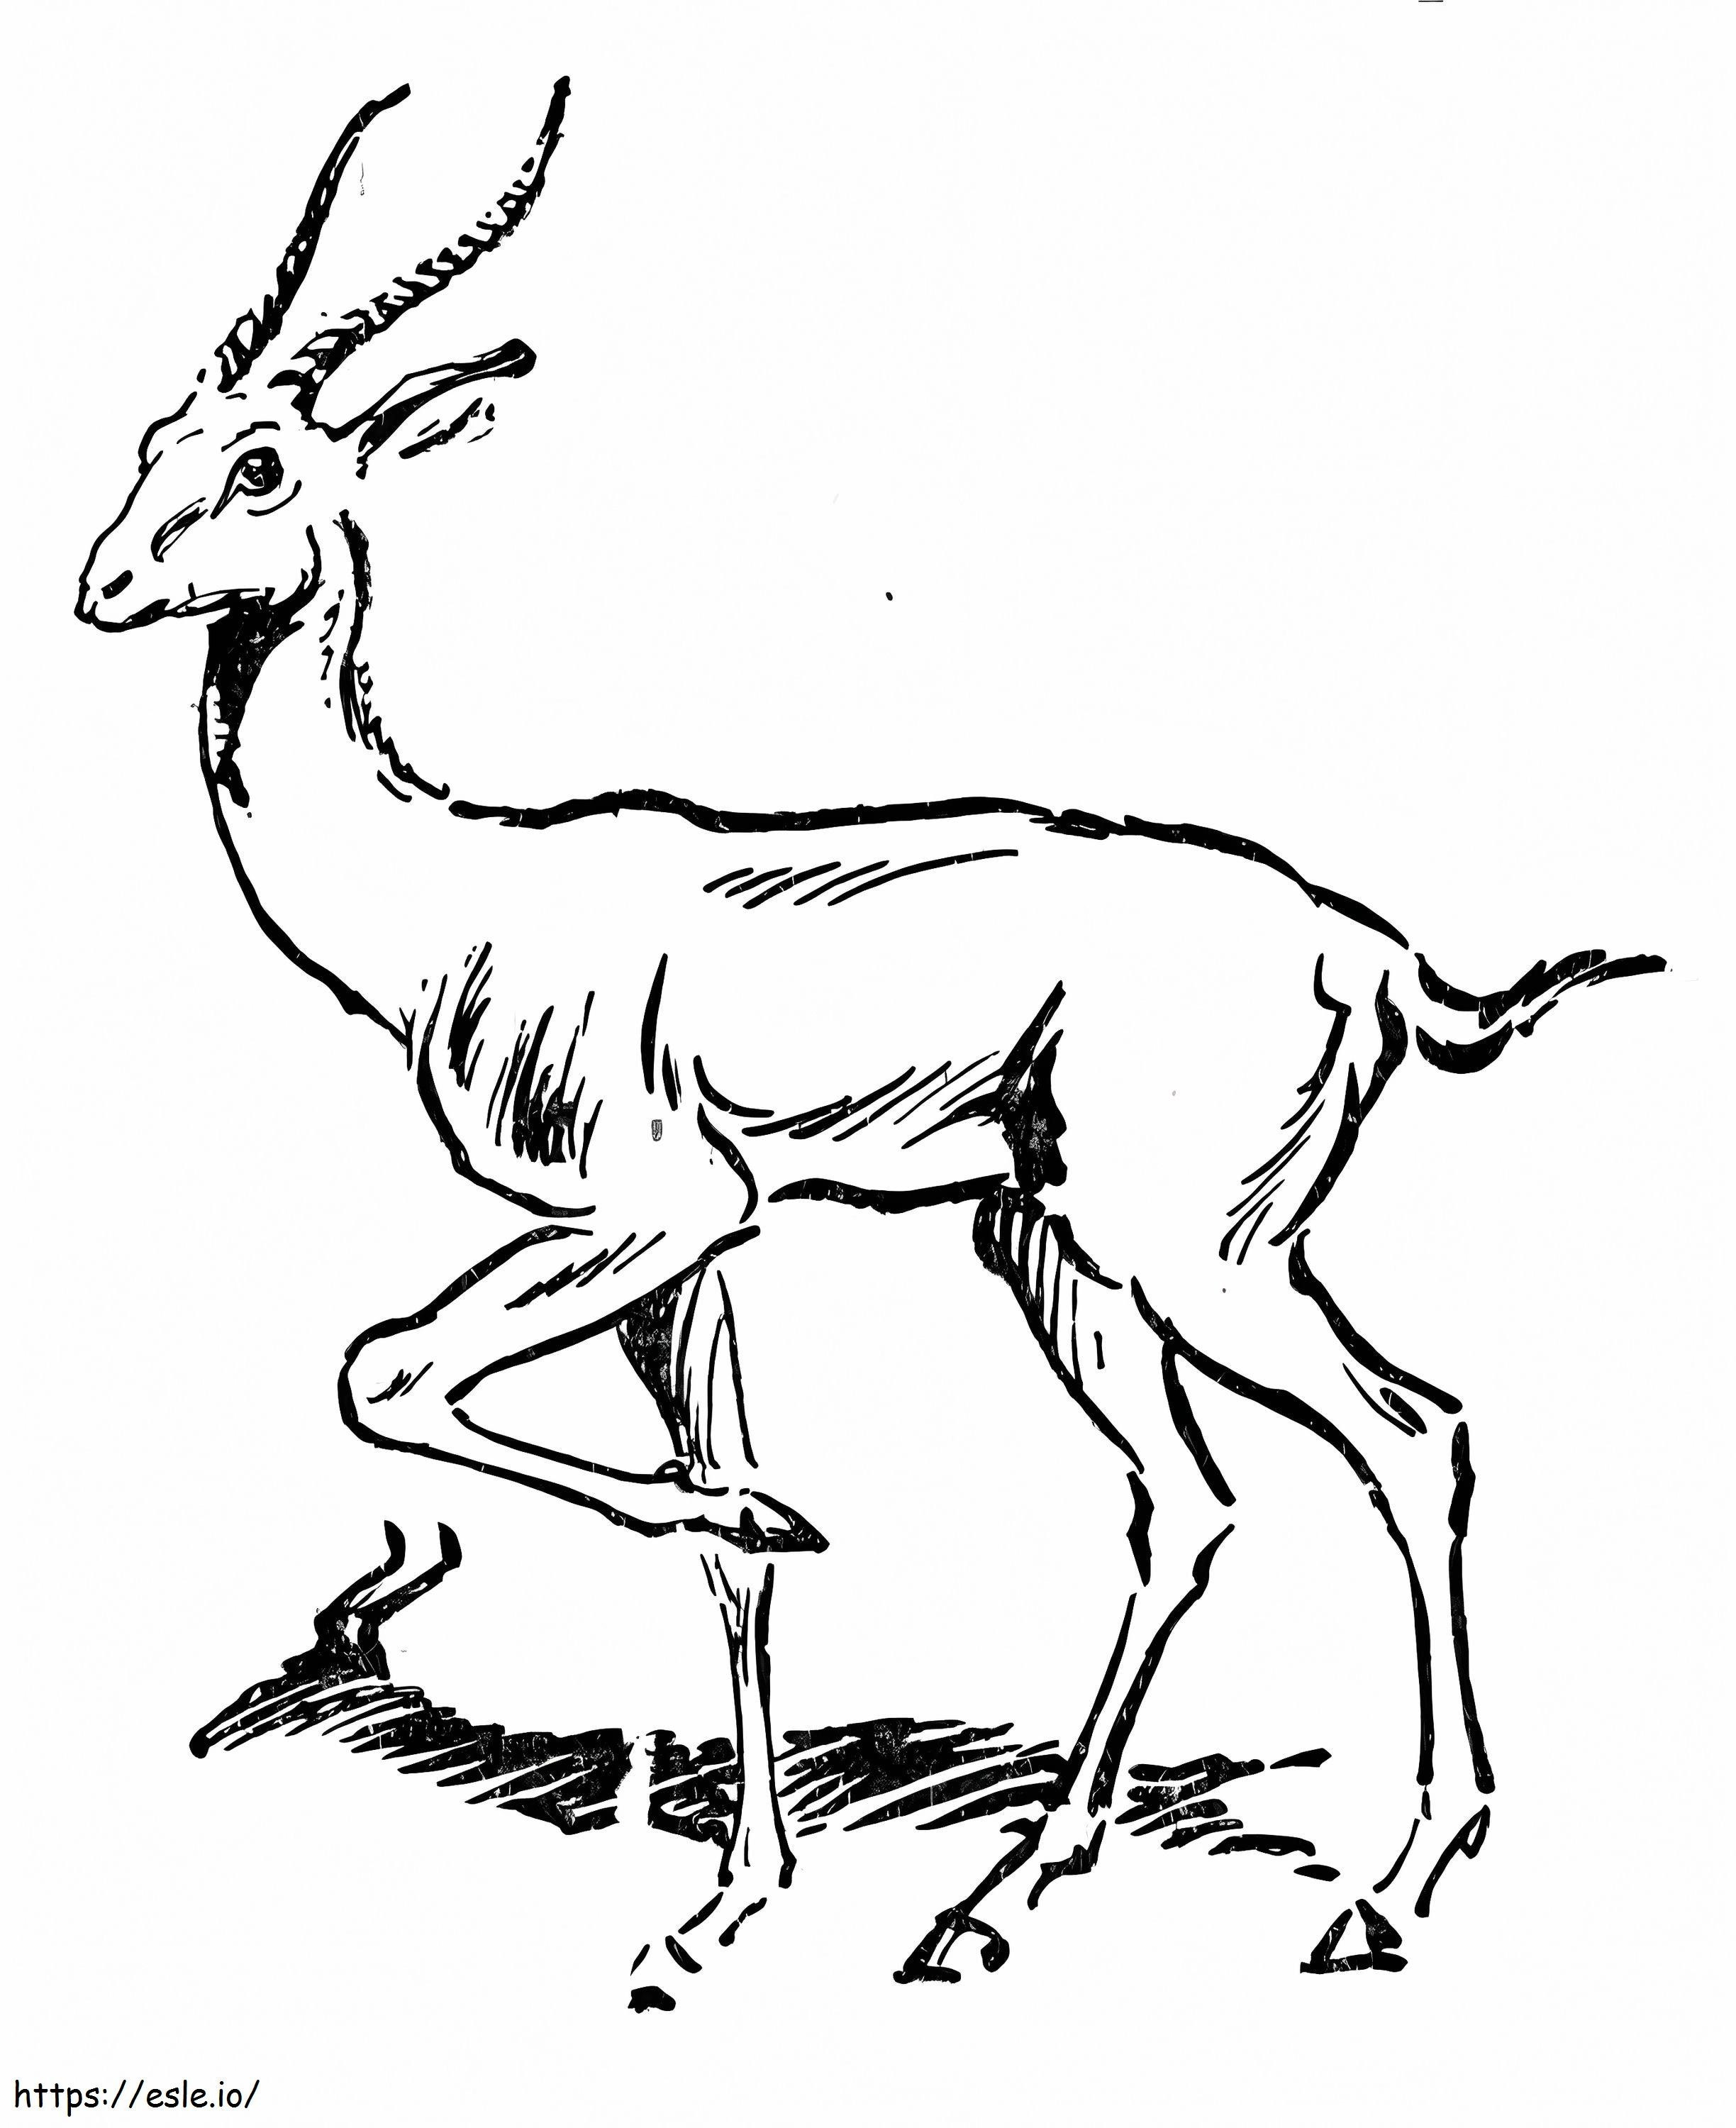 Antilope zum ausdrucken ausmalbilder